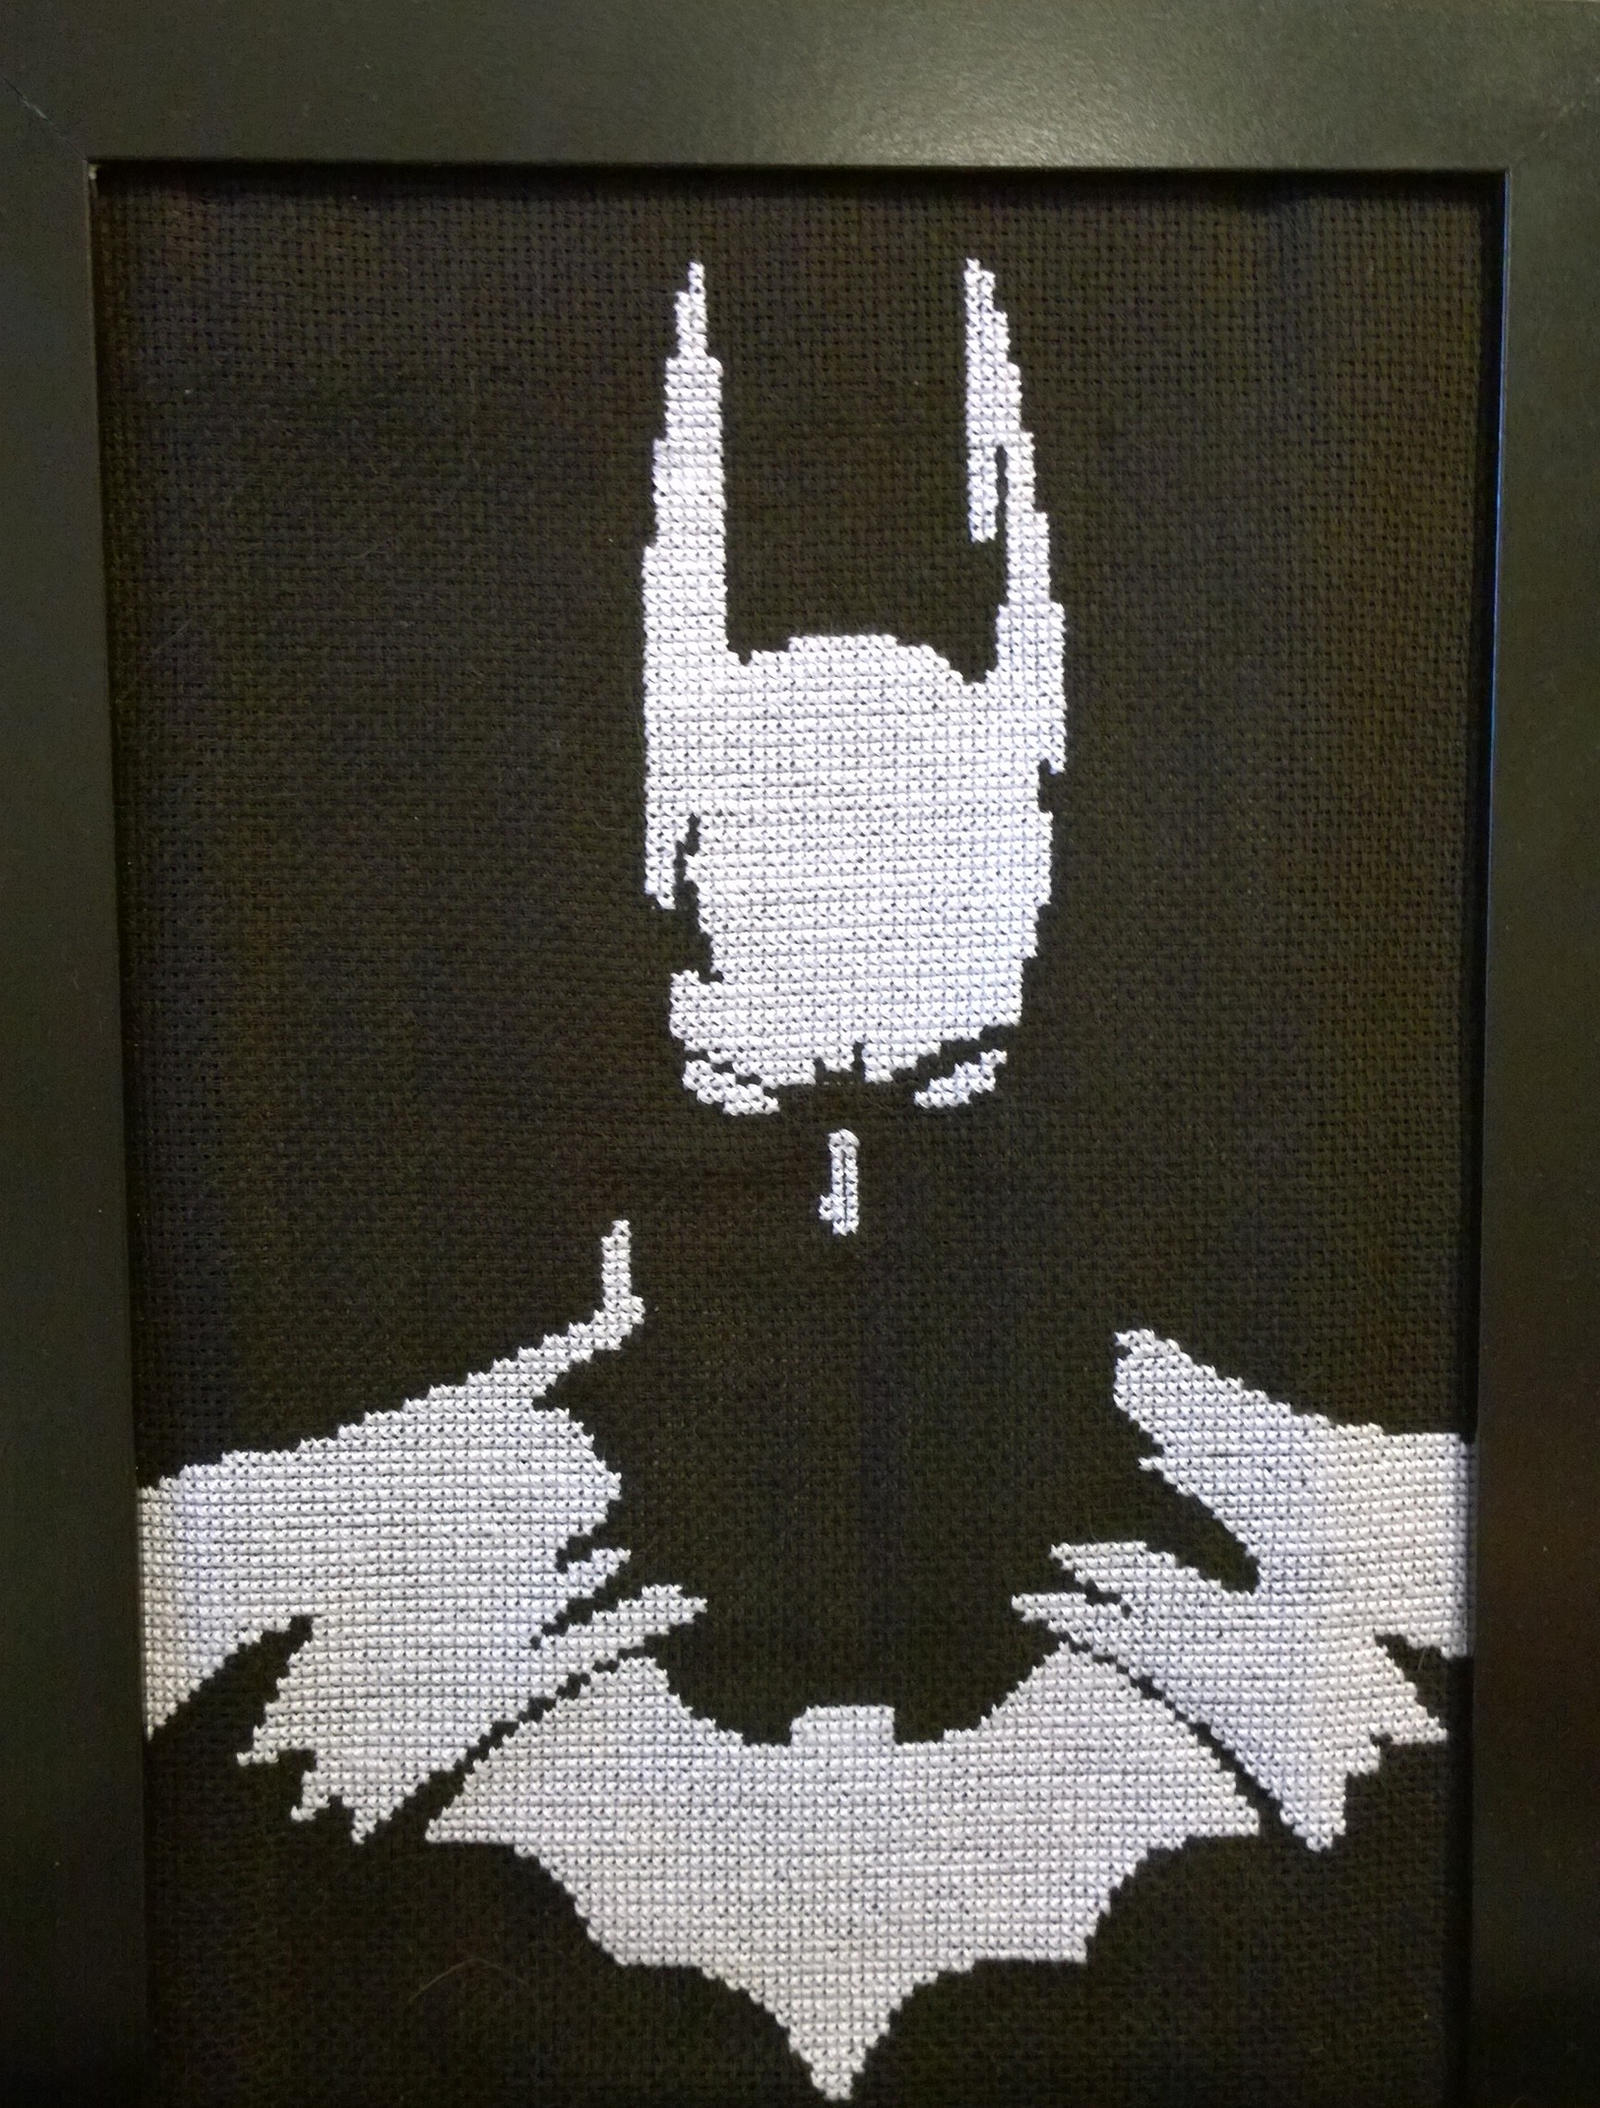 Batman (cross stitch) by LubovGruchina on DeviantArt